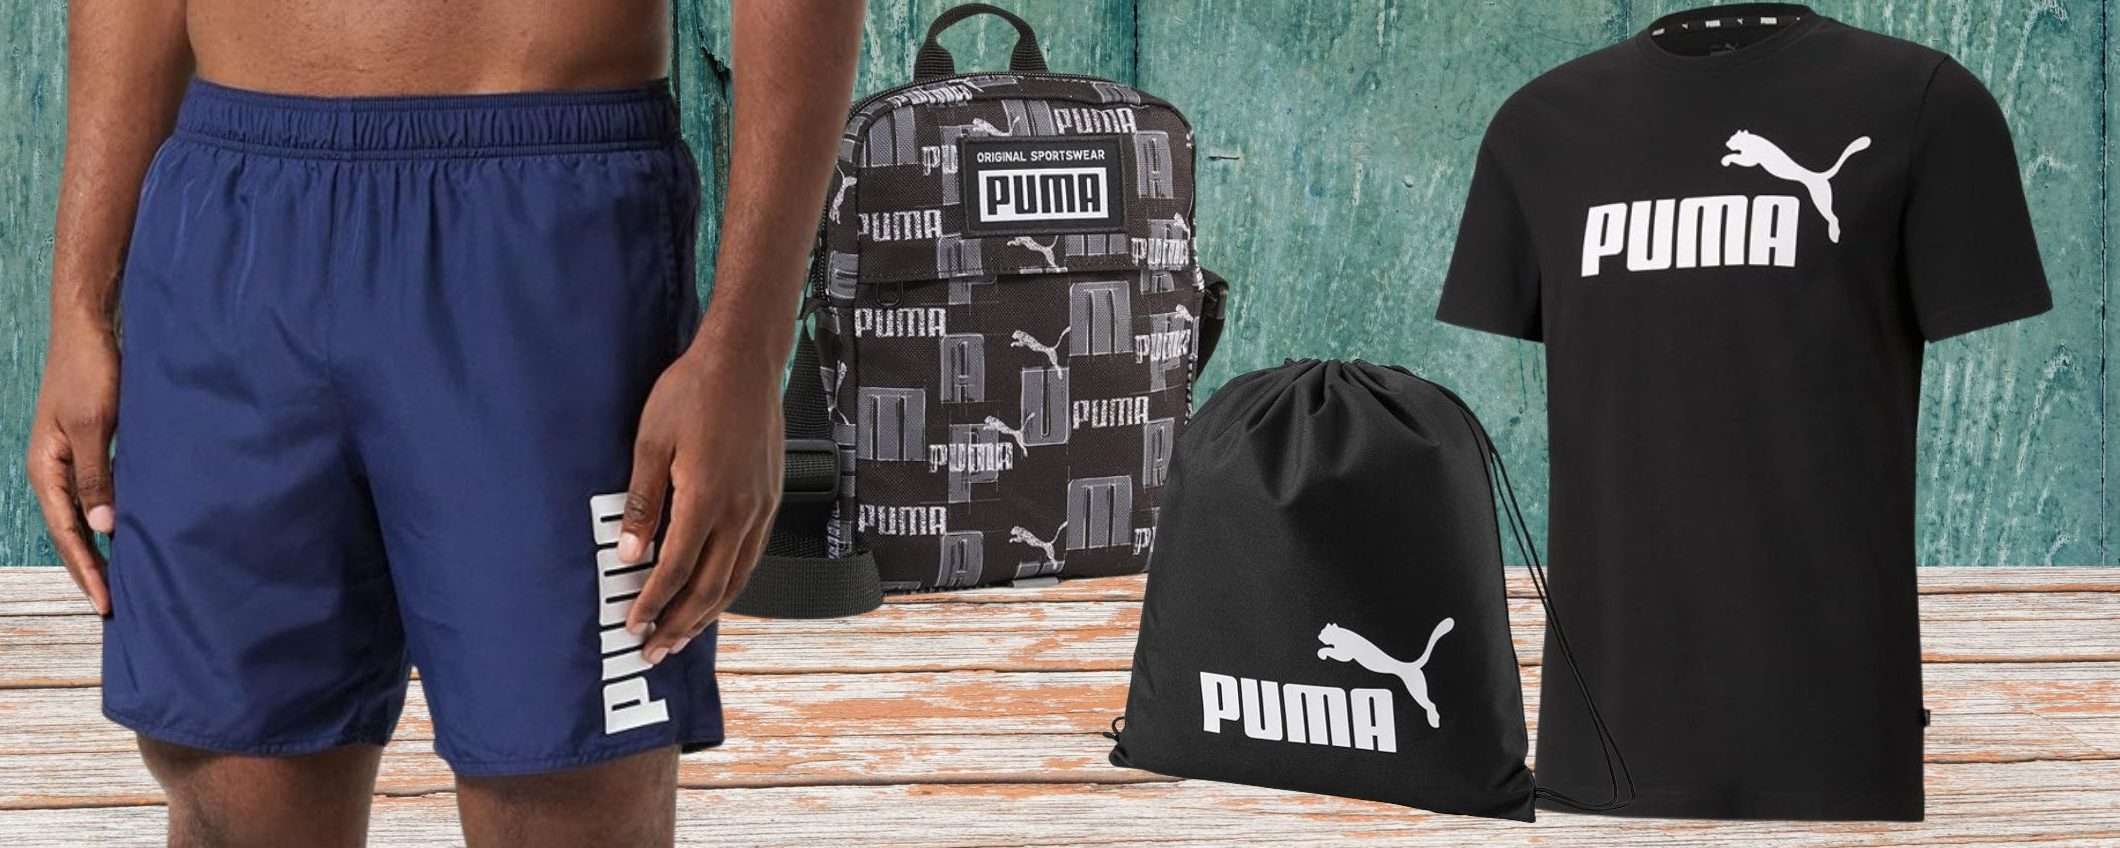 Puma a PREZZI STRACCIATI su Amazon: occasioni WOW a partire da 6,99€